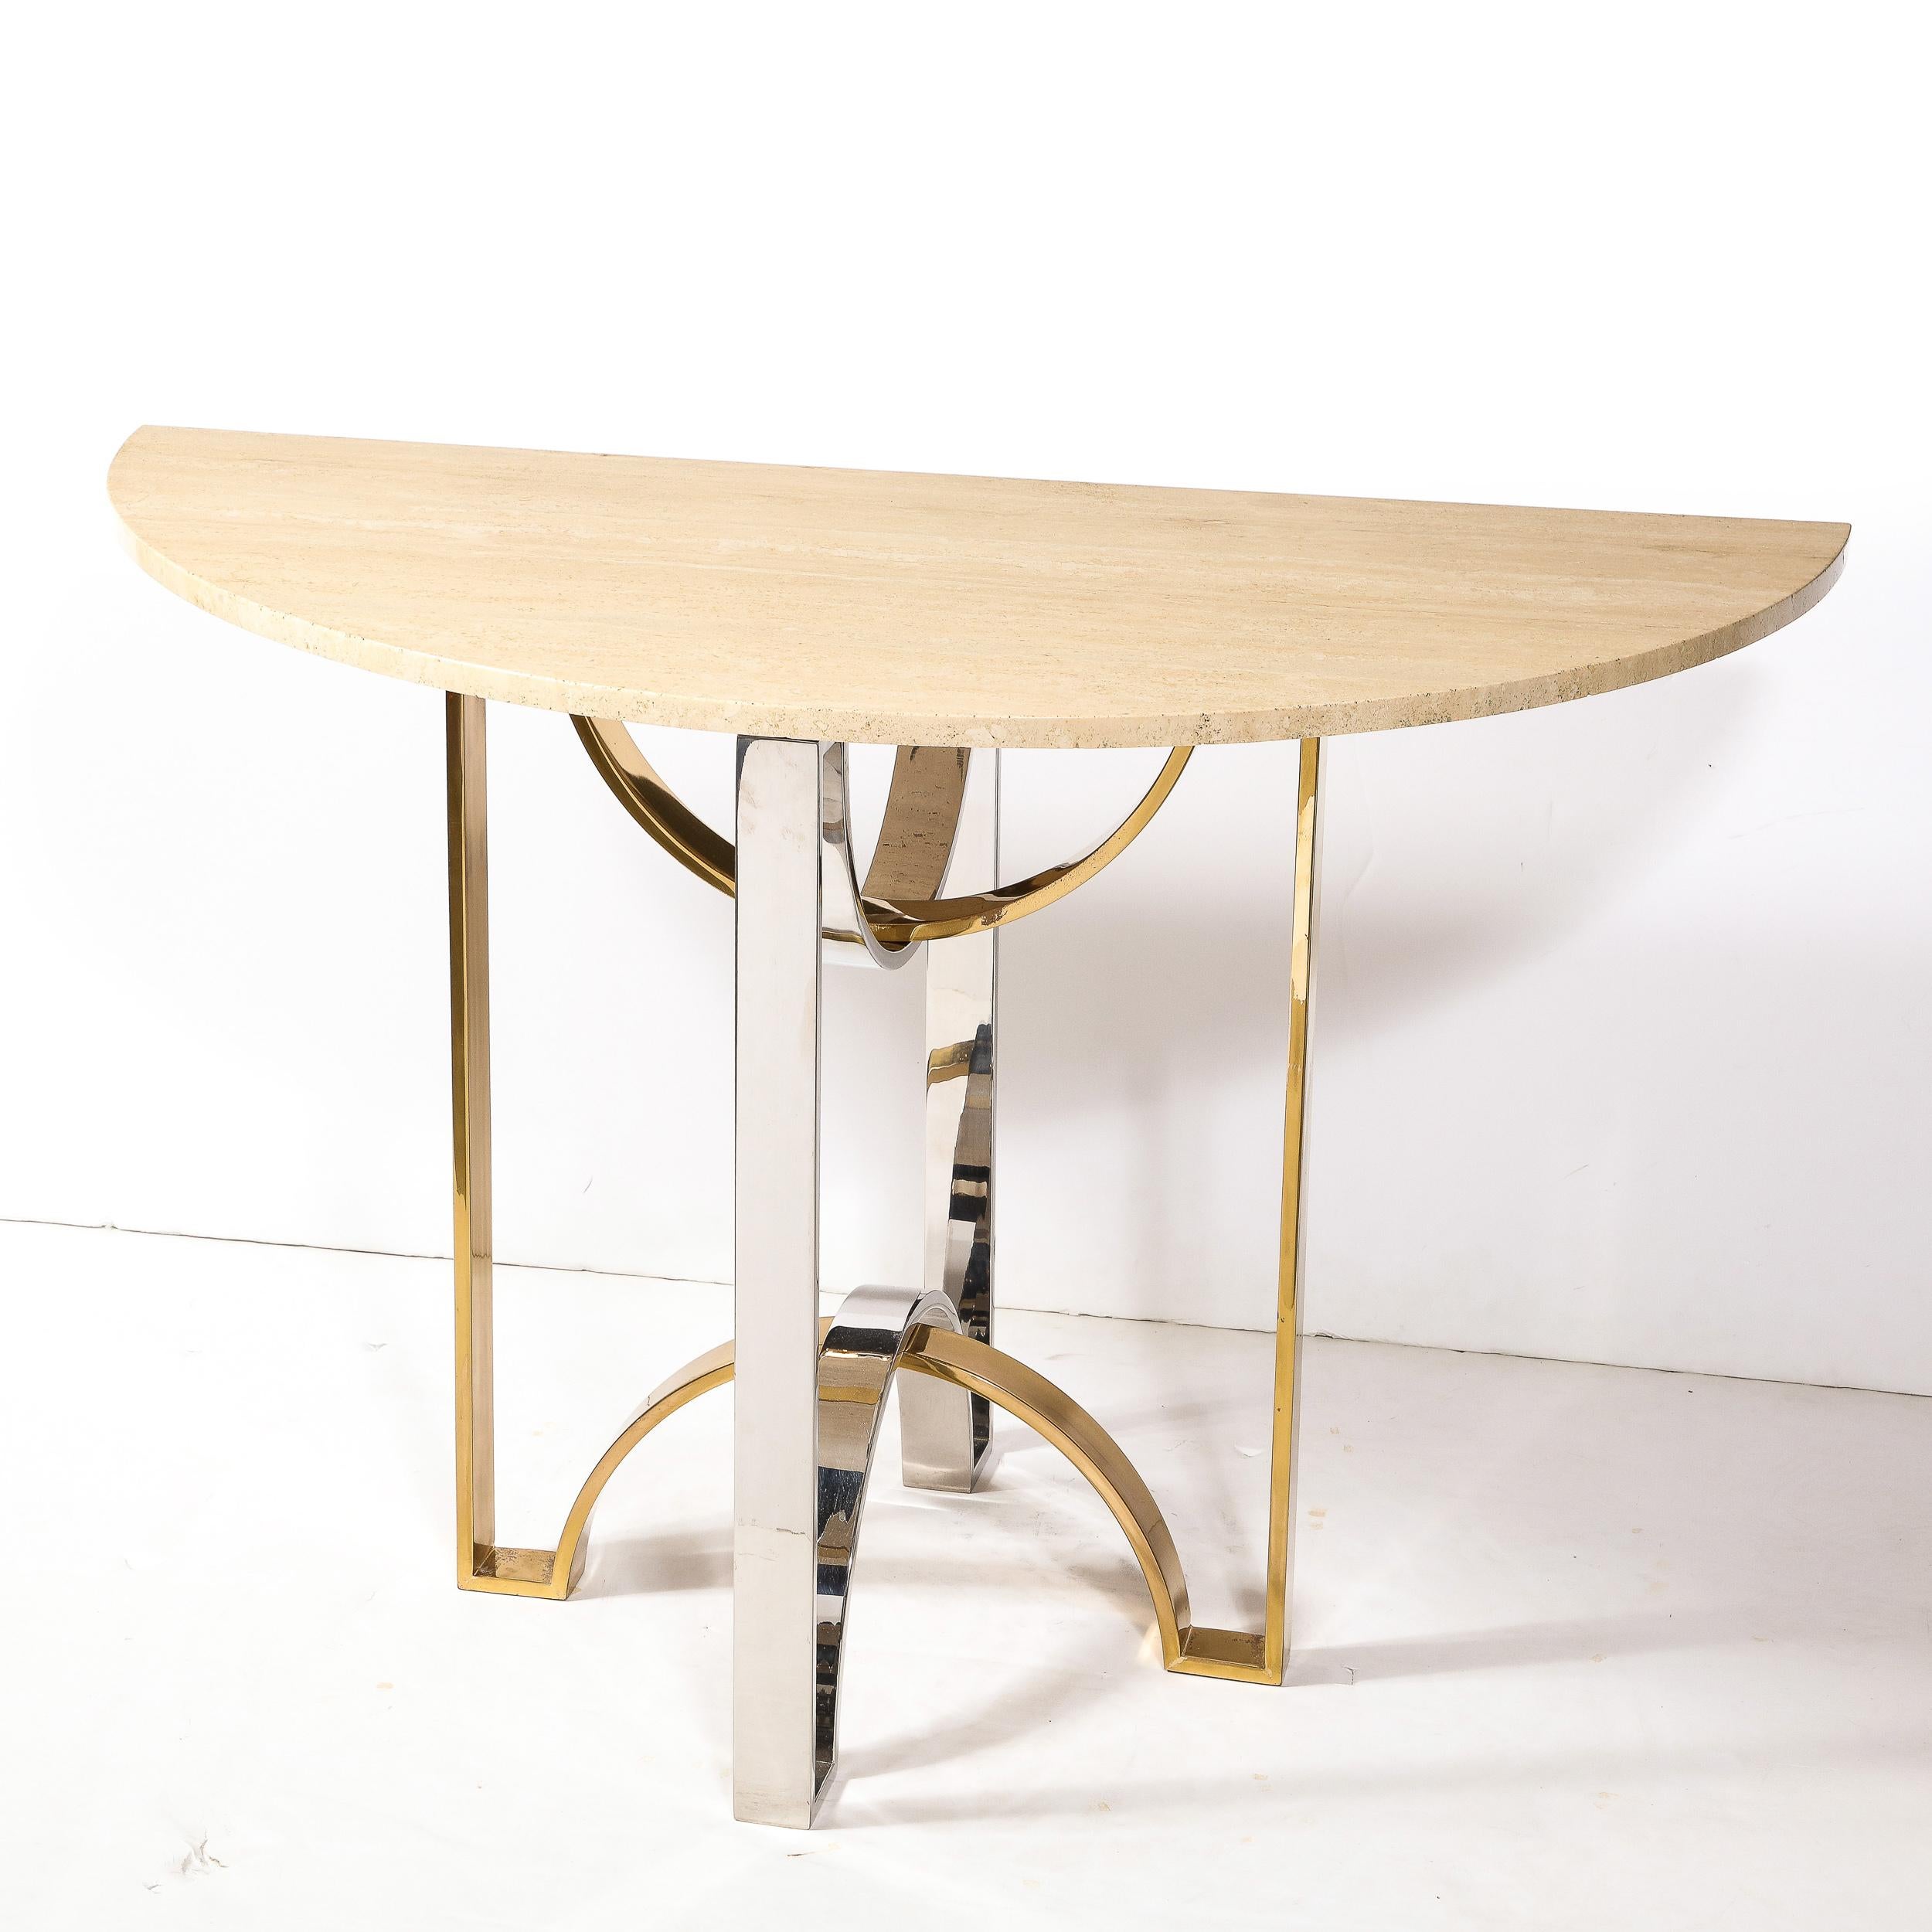 Cette table console moderniste du milieu du siècle est originaire des États-Unis, vers 1970. Le plateau en marbre travertin démilune repose sur une base composée de deux bandes courbes entrelacées en chrome et en laiton. Les métaux mélangés